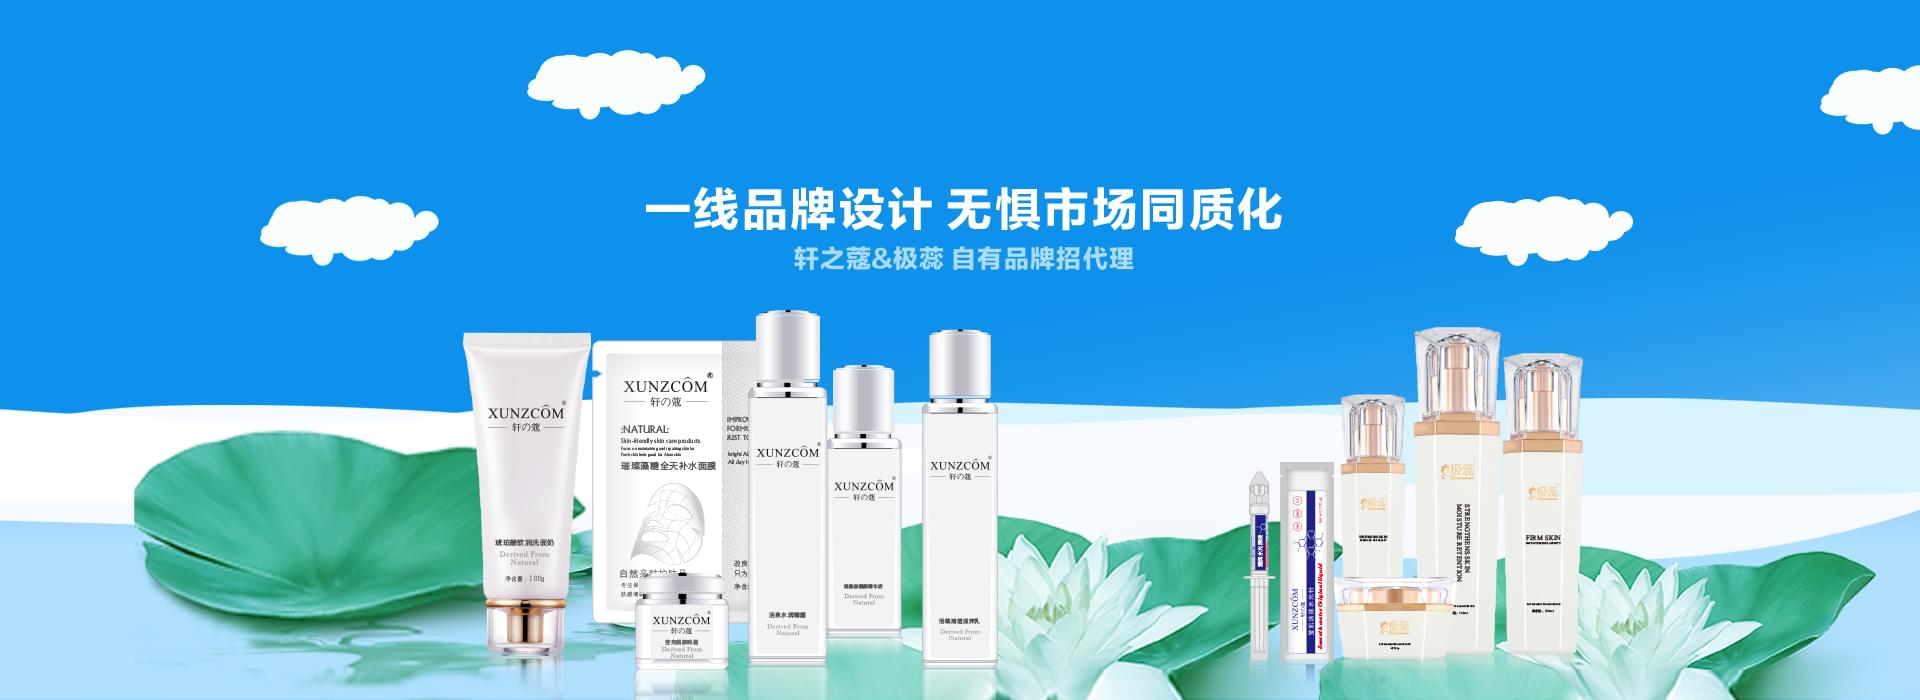 尊龙人生信誉生化-中国化妆品OEM/ODM一站式制造服务商